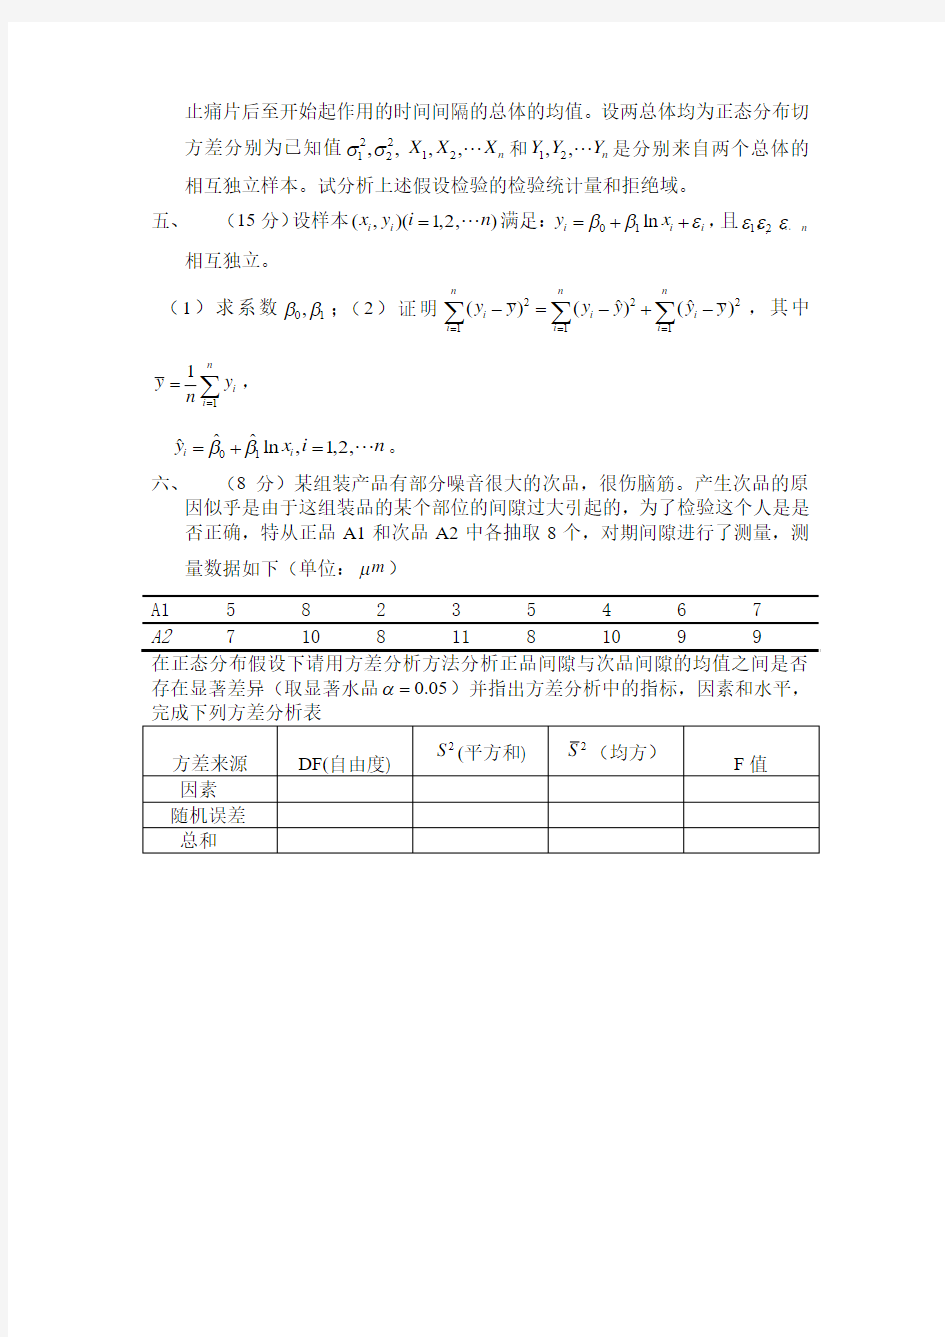 重庆大学硕士研究生2010级_应用数理统计_课程(A)试题